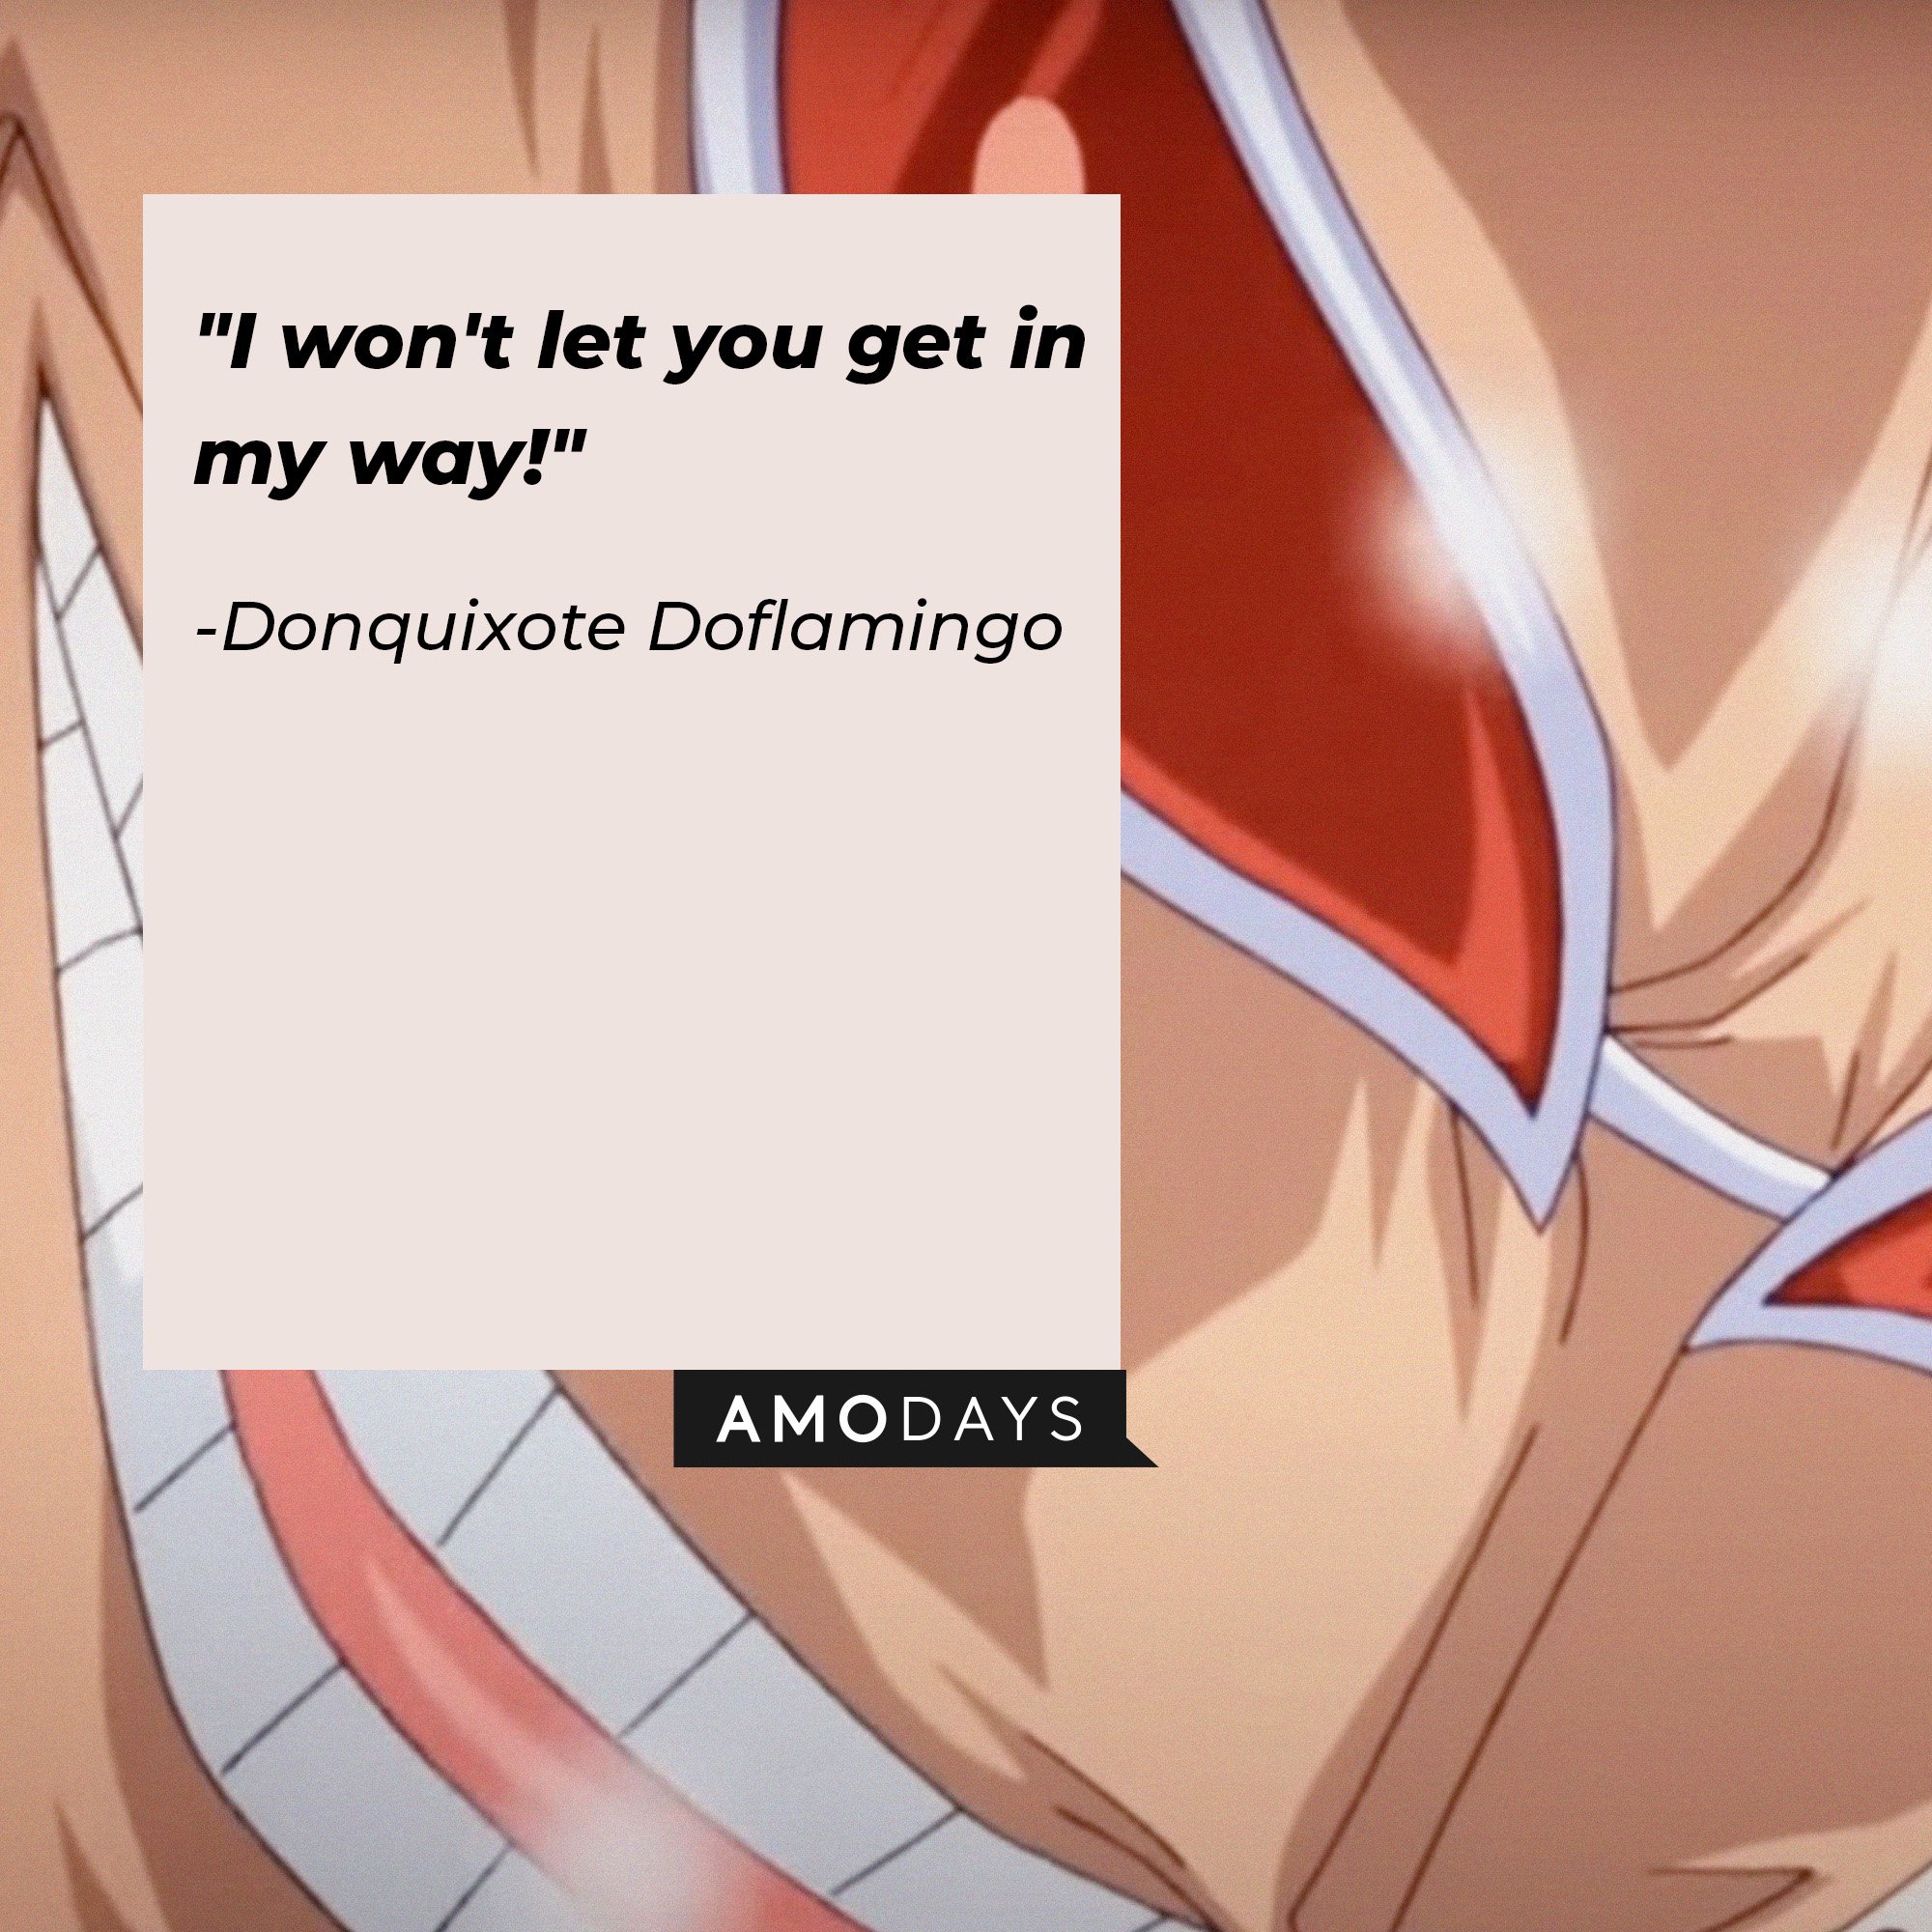 Donquixote Doflamingo’s quote: "I won't let you get in my way!" | Image: AmoDays